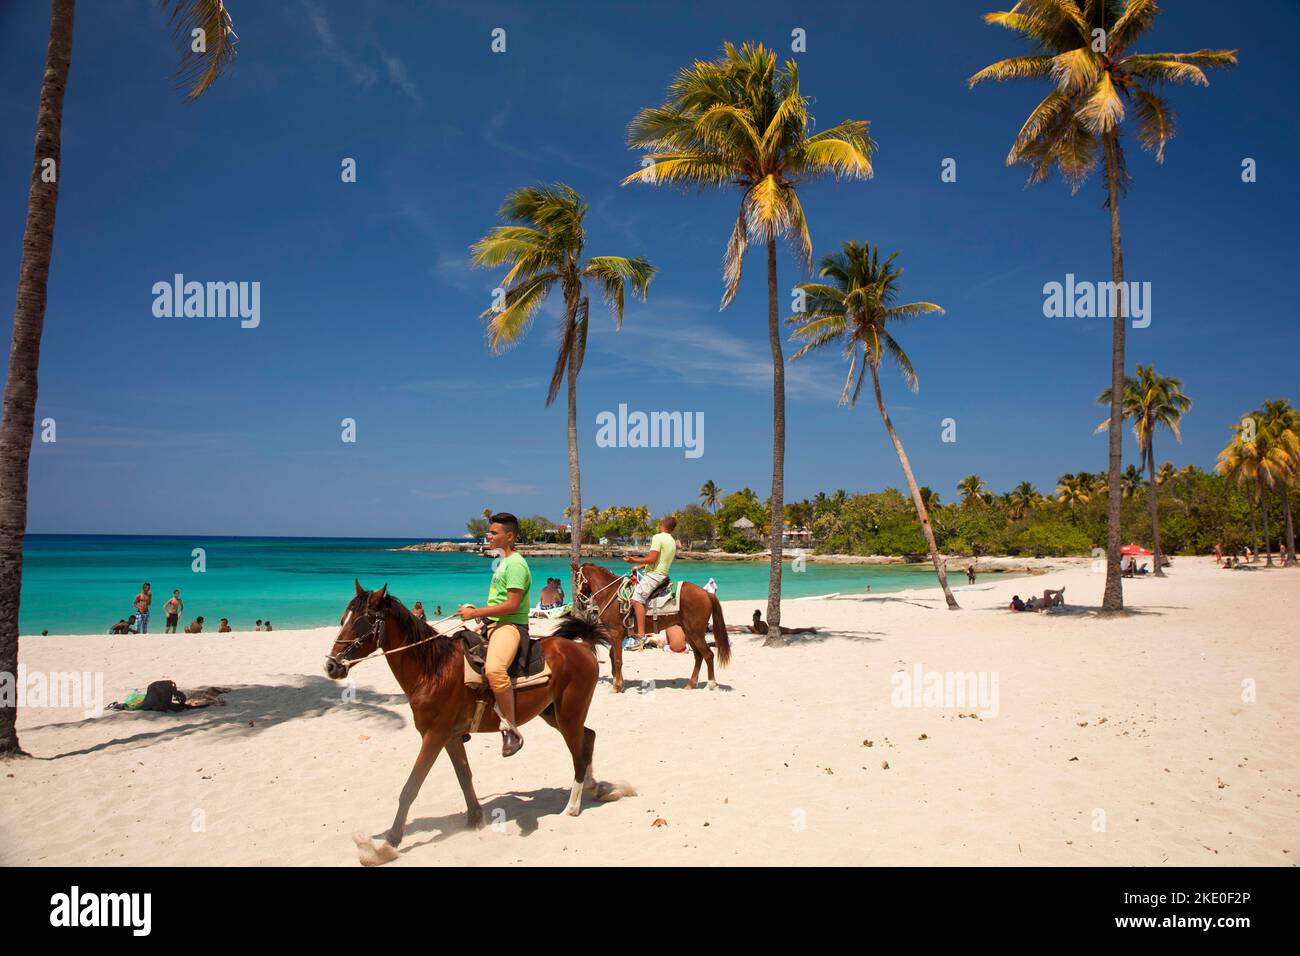 Pferde und Reiter am Strand von Bacuranao, Playas del este, Havanna, Kuba, Karibik  | horseriding at Bacuranao Beach, Playas del este,  Havana, Cuba, Stock Photo